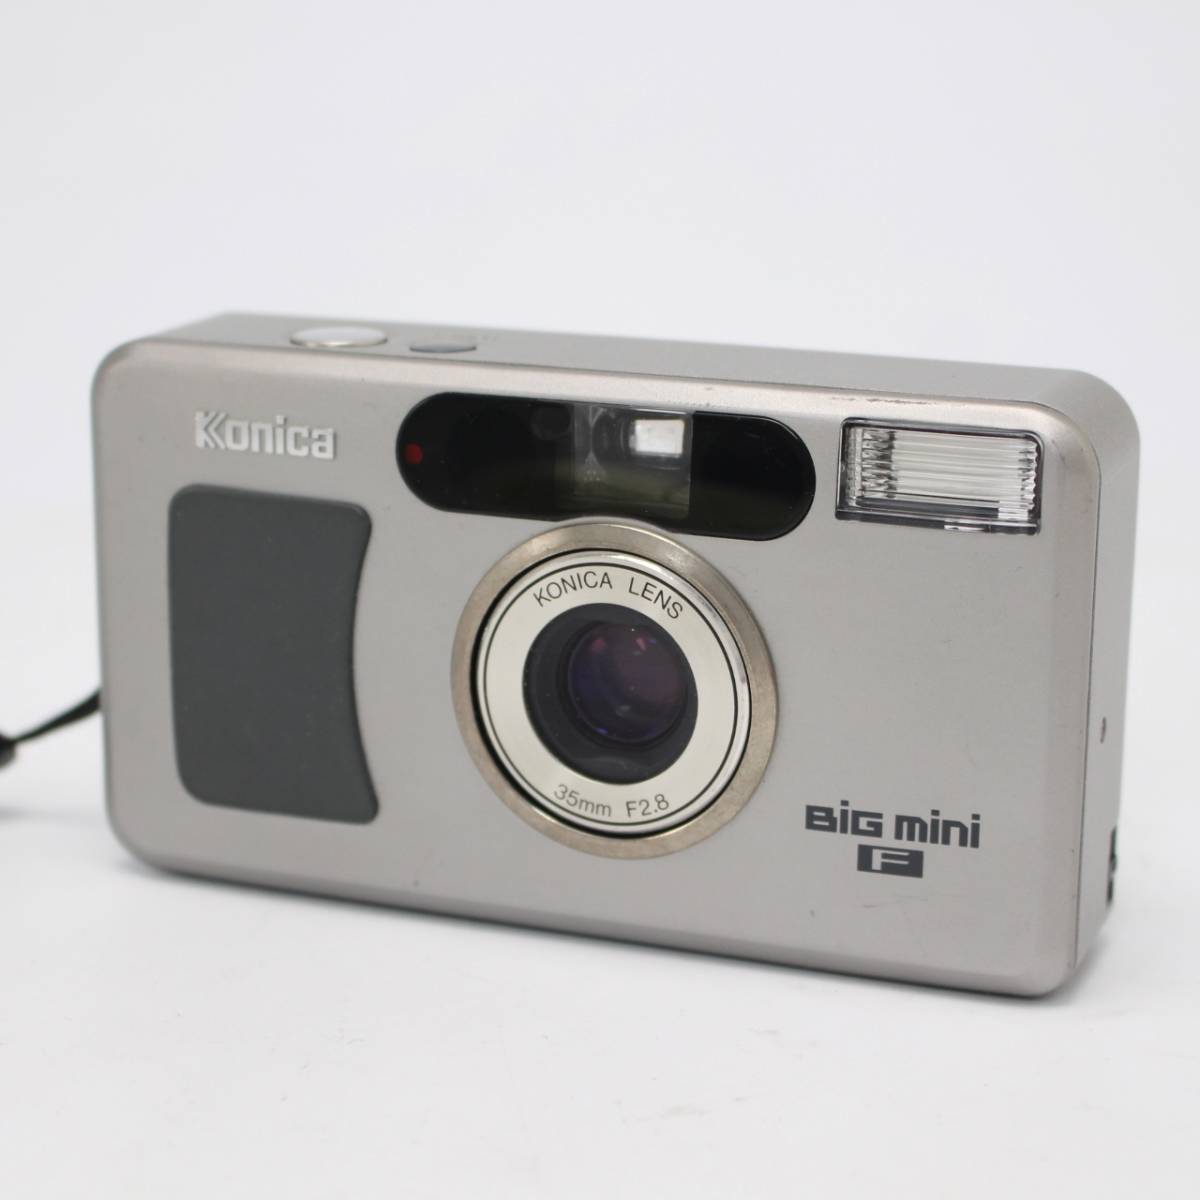 Konica コニカ BiG mini F 35mm F2.8 コンパクトフィルムカメラ